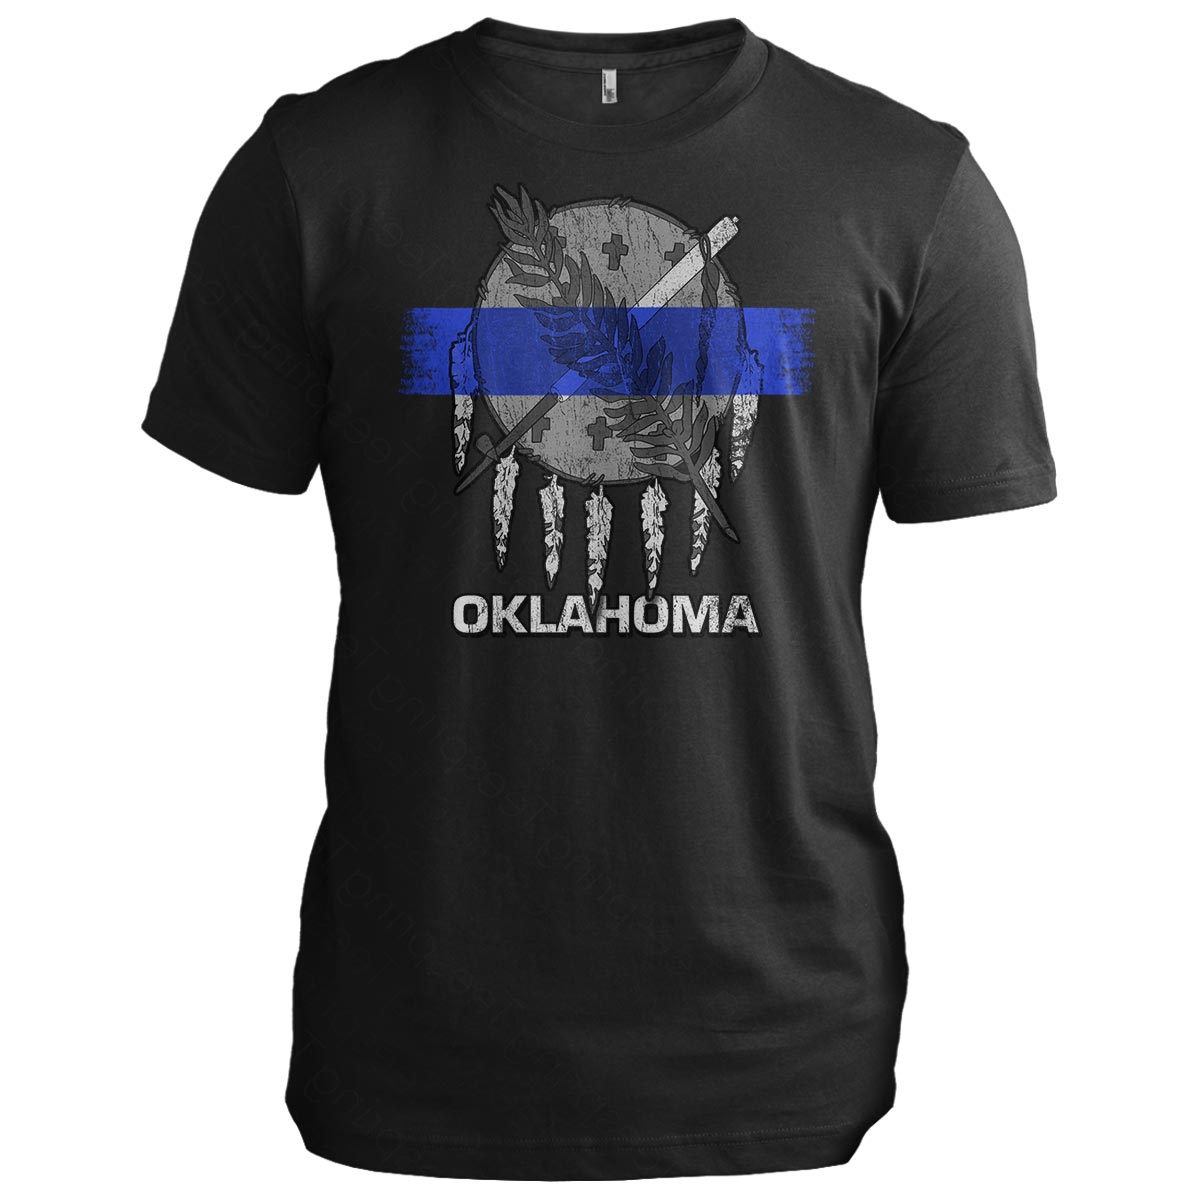 Oklahoma Police